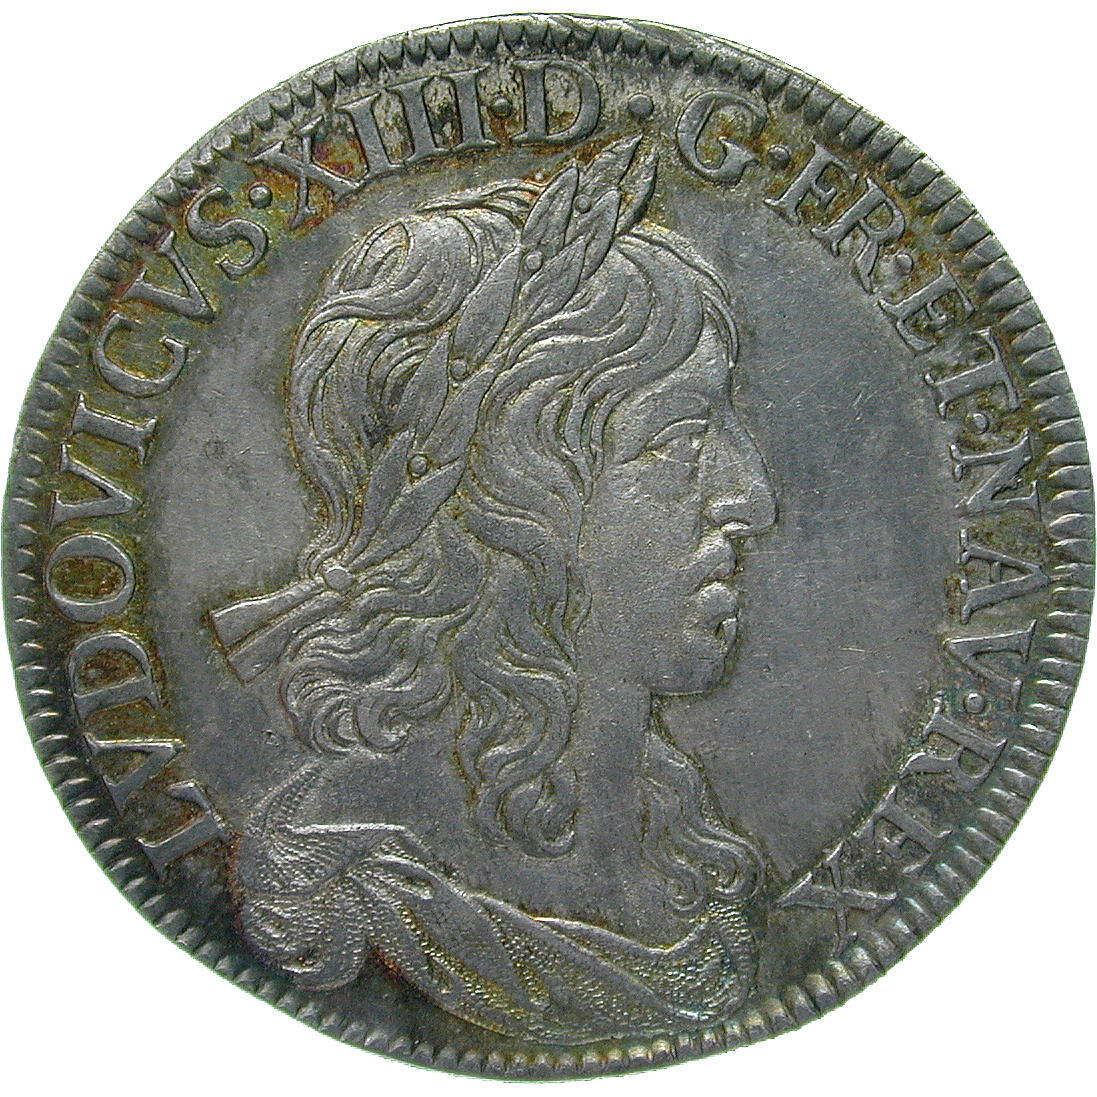 Königreich Frankreich, Ludwig XIII., 1/4 Ecu 1642 (obverse)